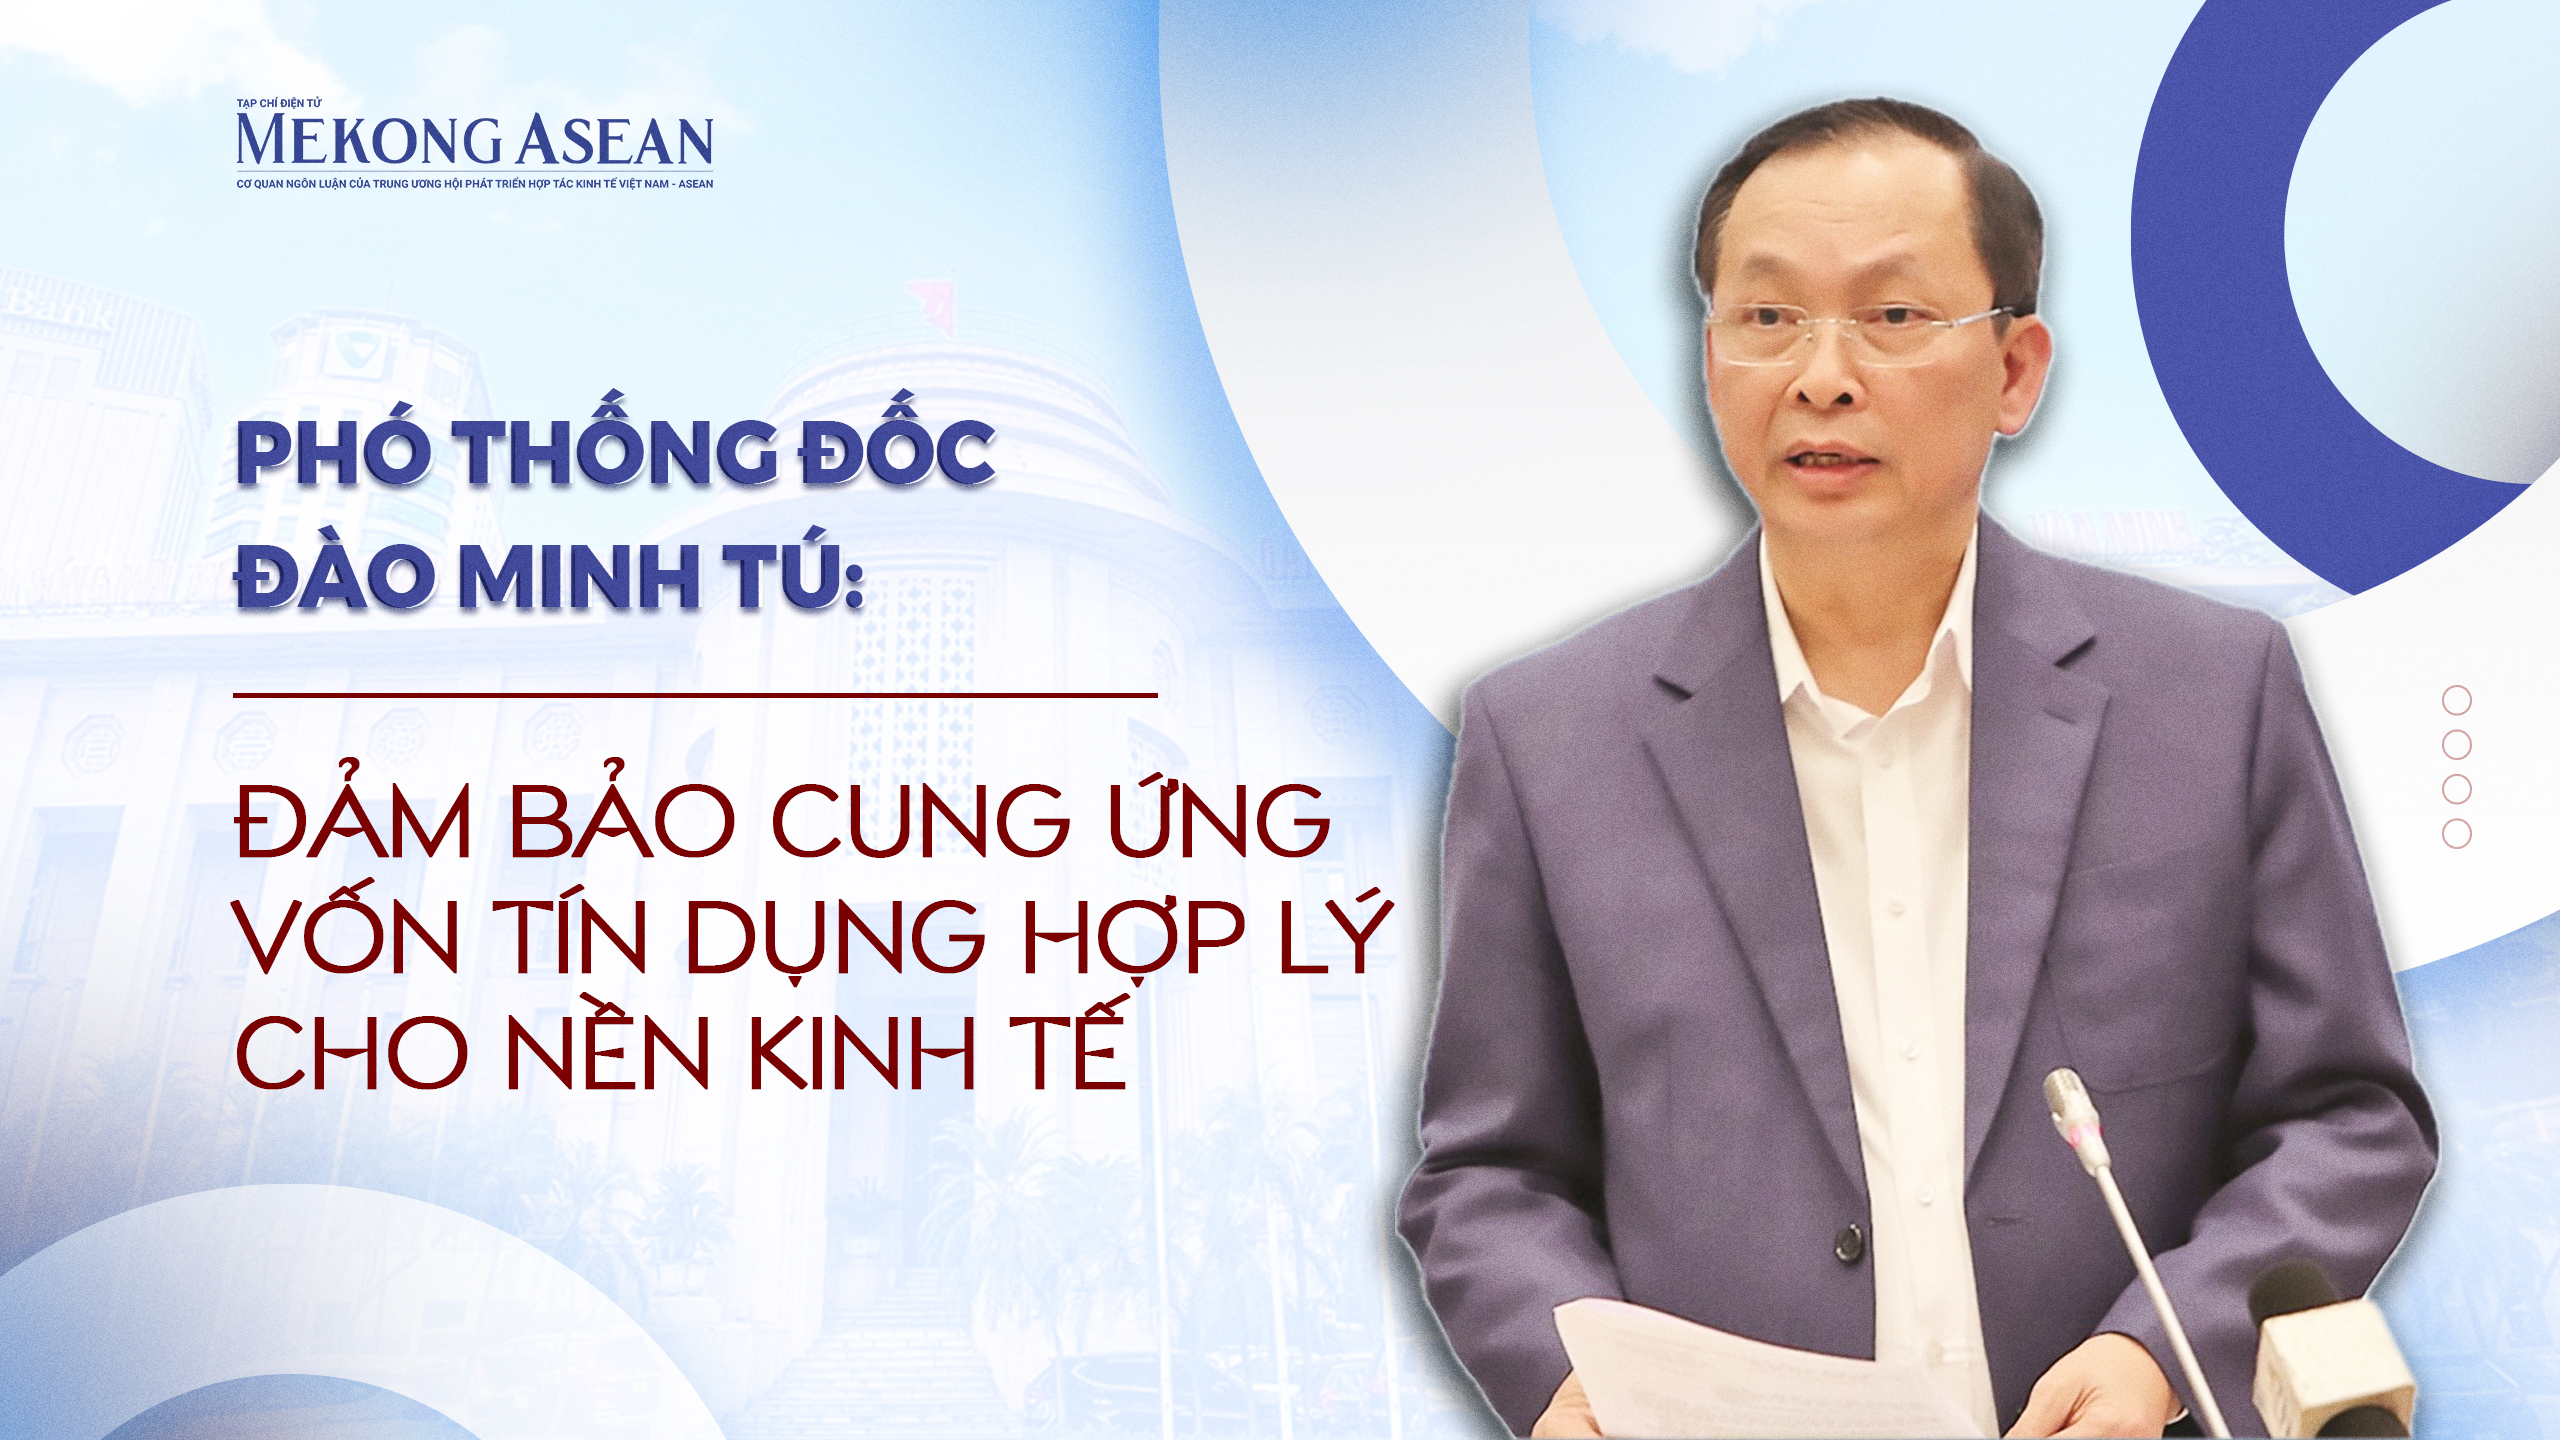 Phó Thống đốc Đào Minh Tú: Đảm bảo cung ứng vốn tín dụng hợp lý cho nền kinh tế